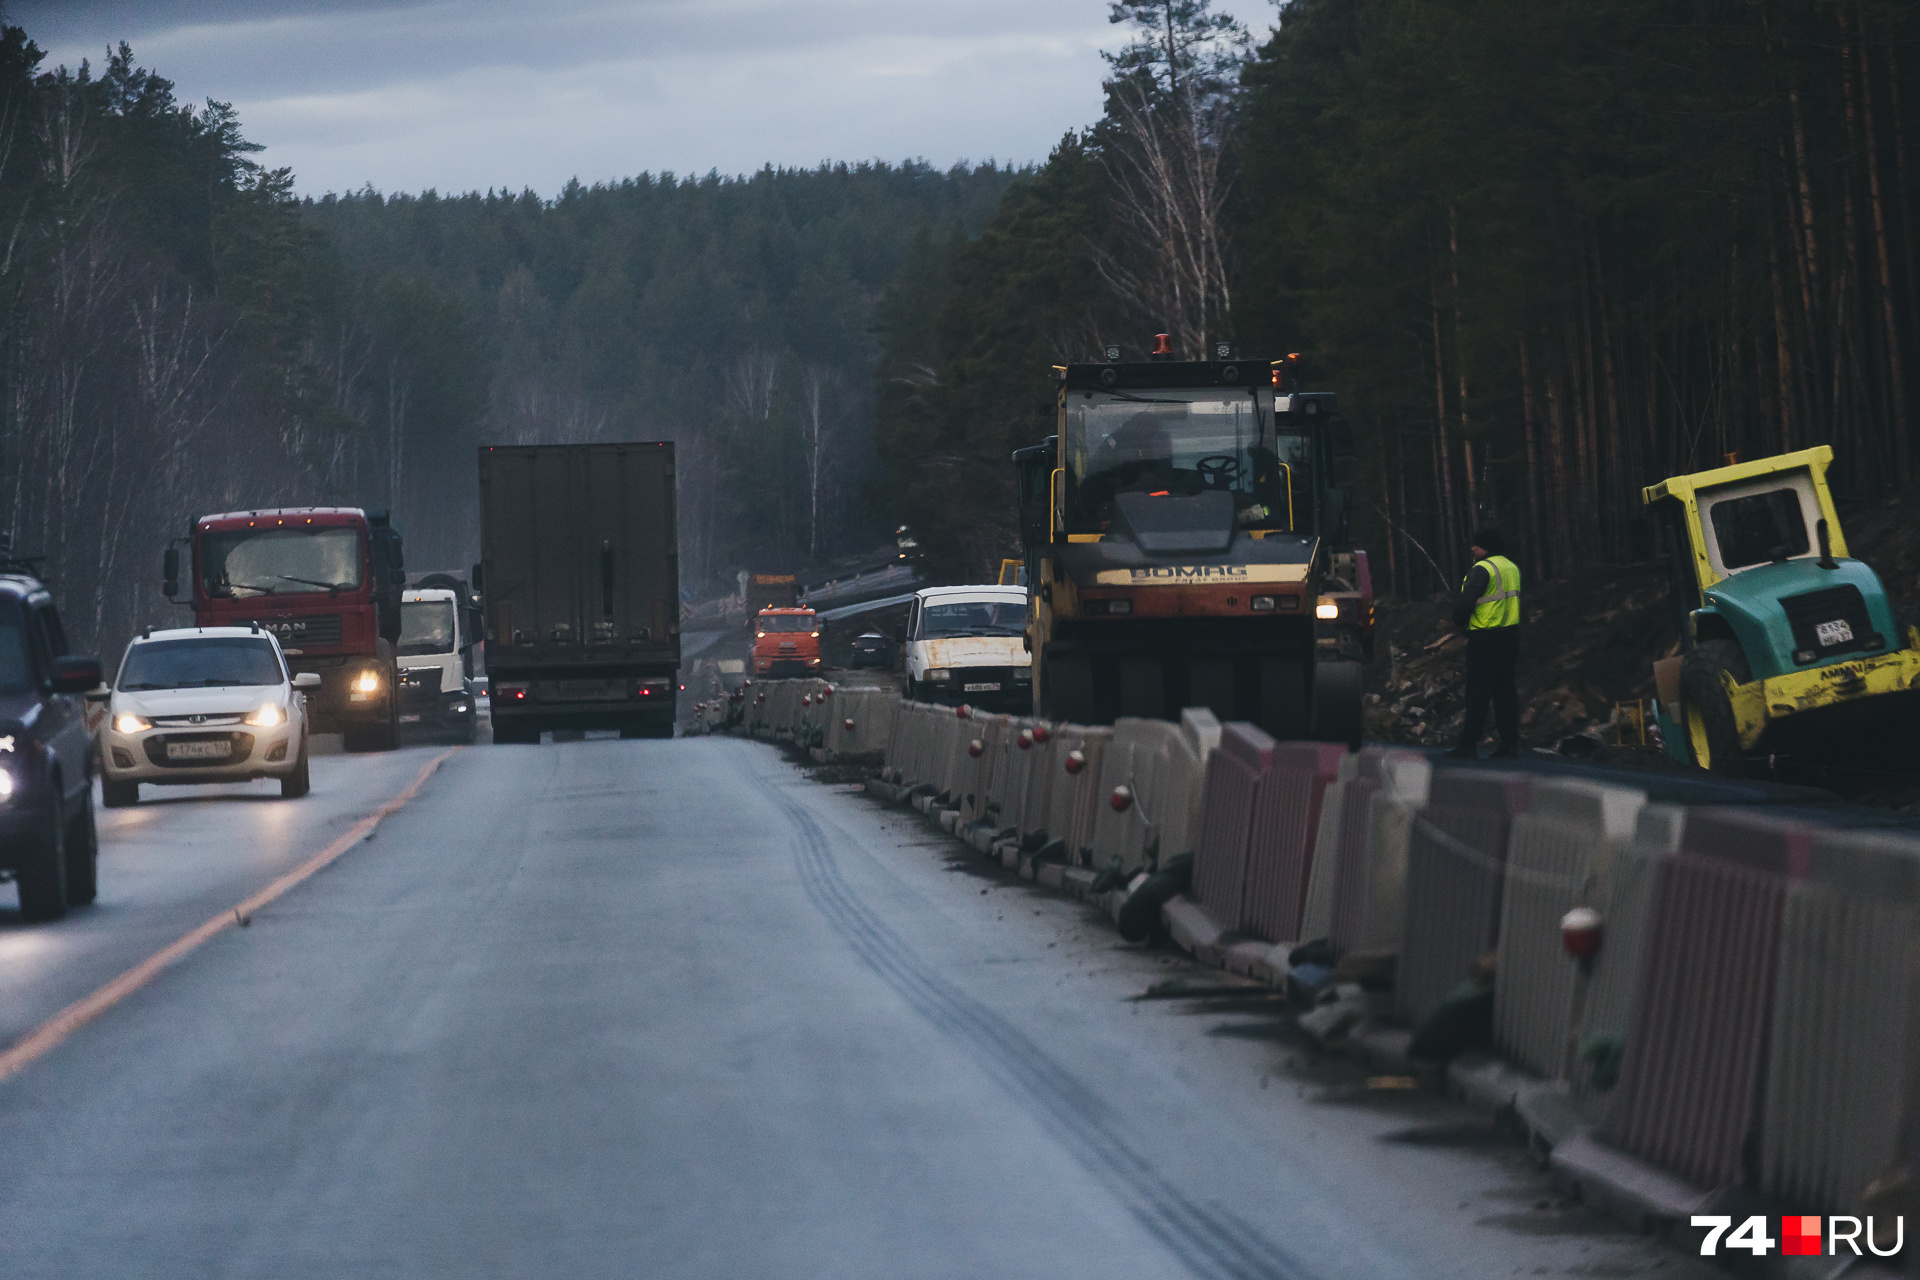 Подрядчика оштрафовали в Забайкалье за сорванные сроки ремонта дороги